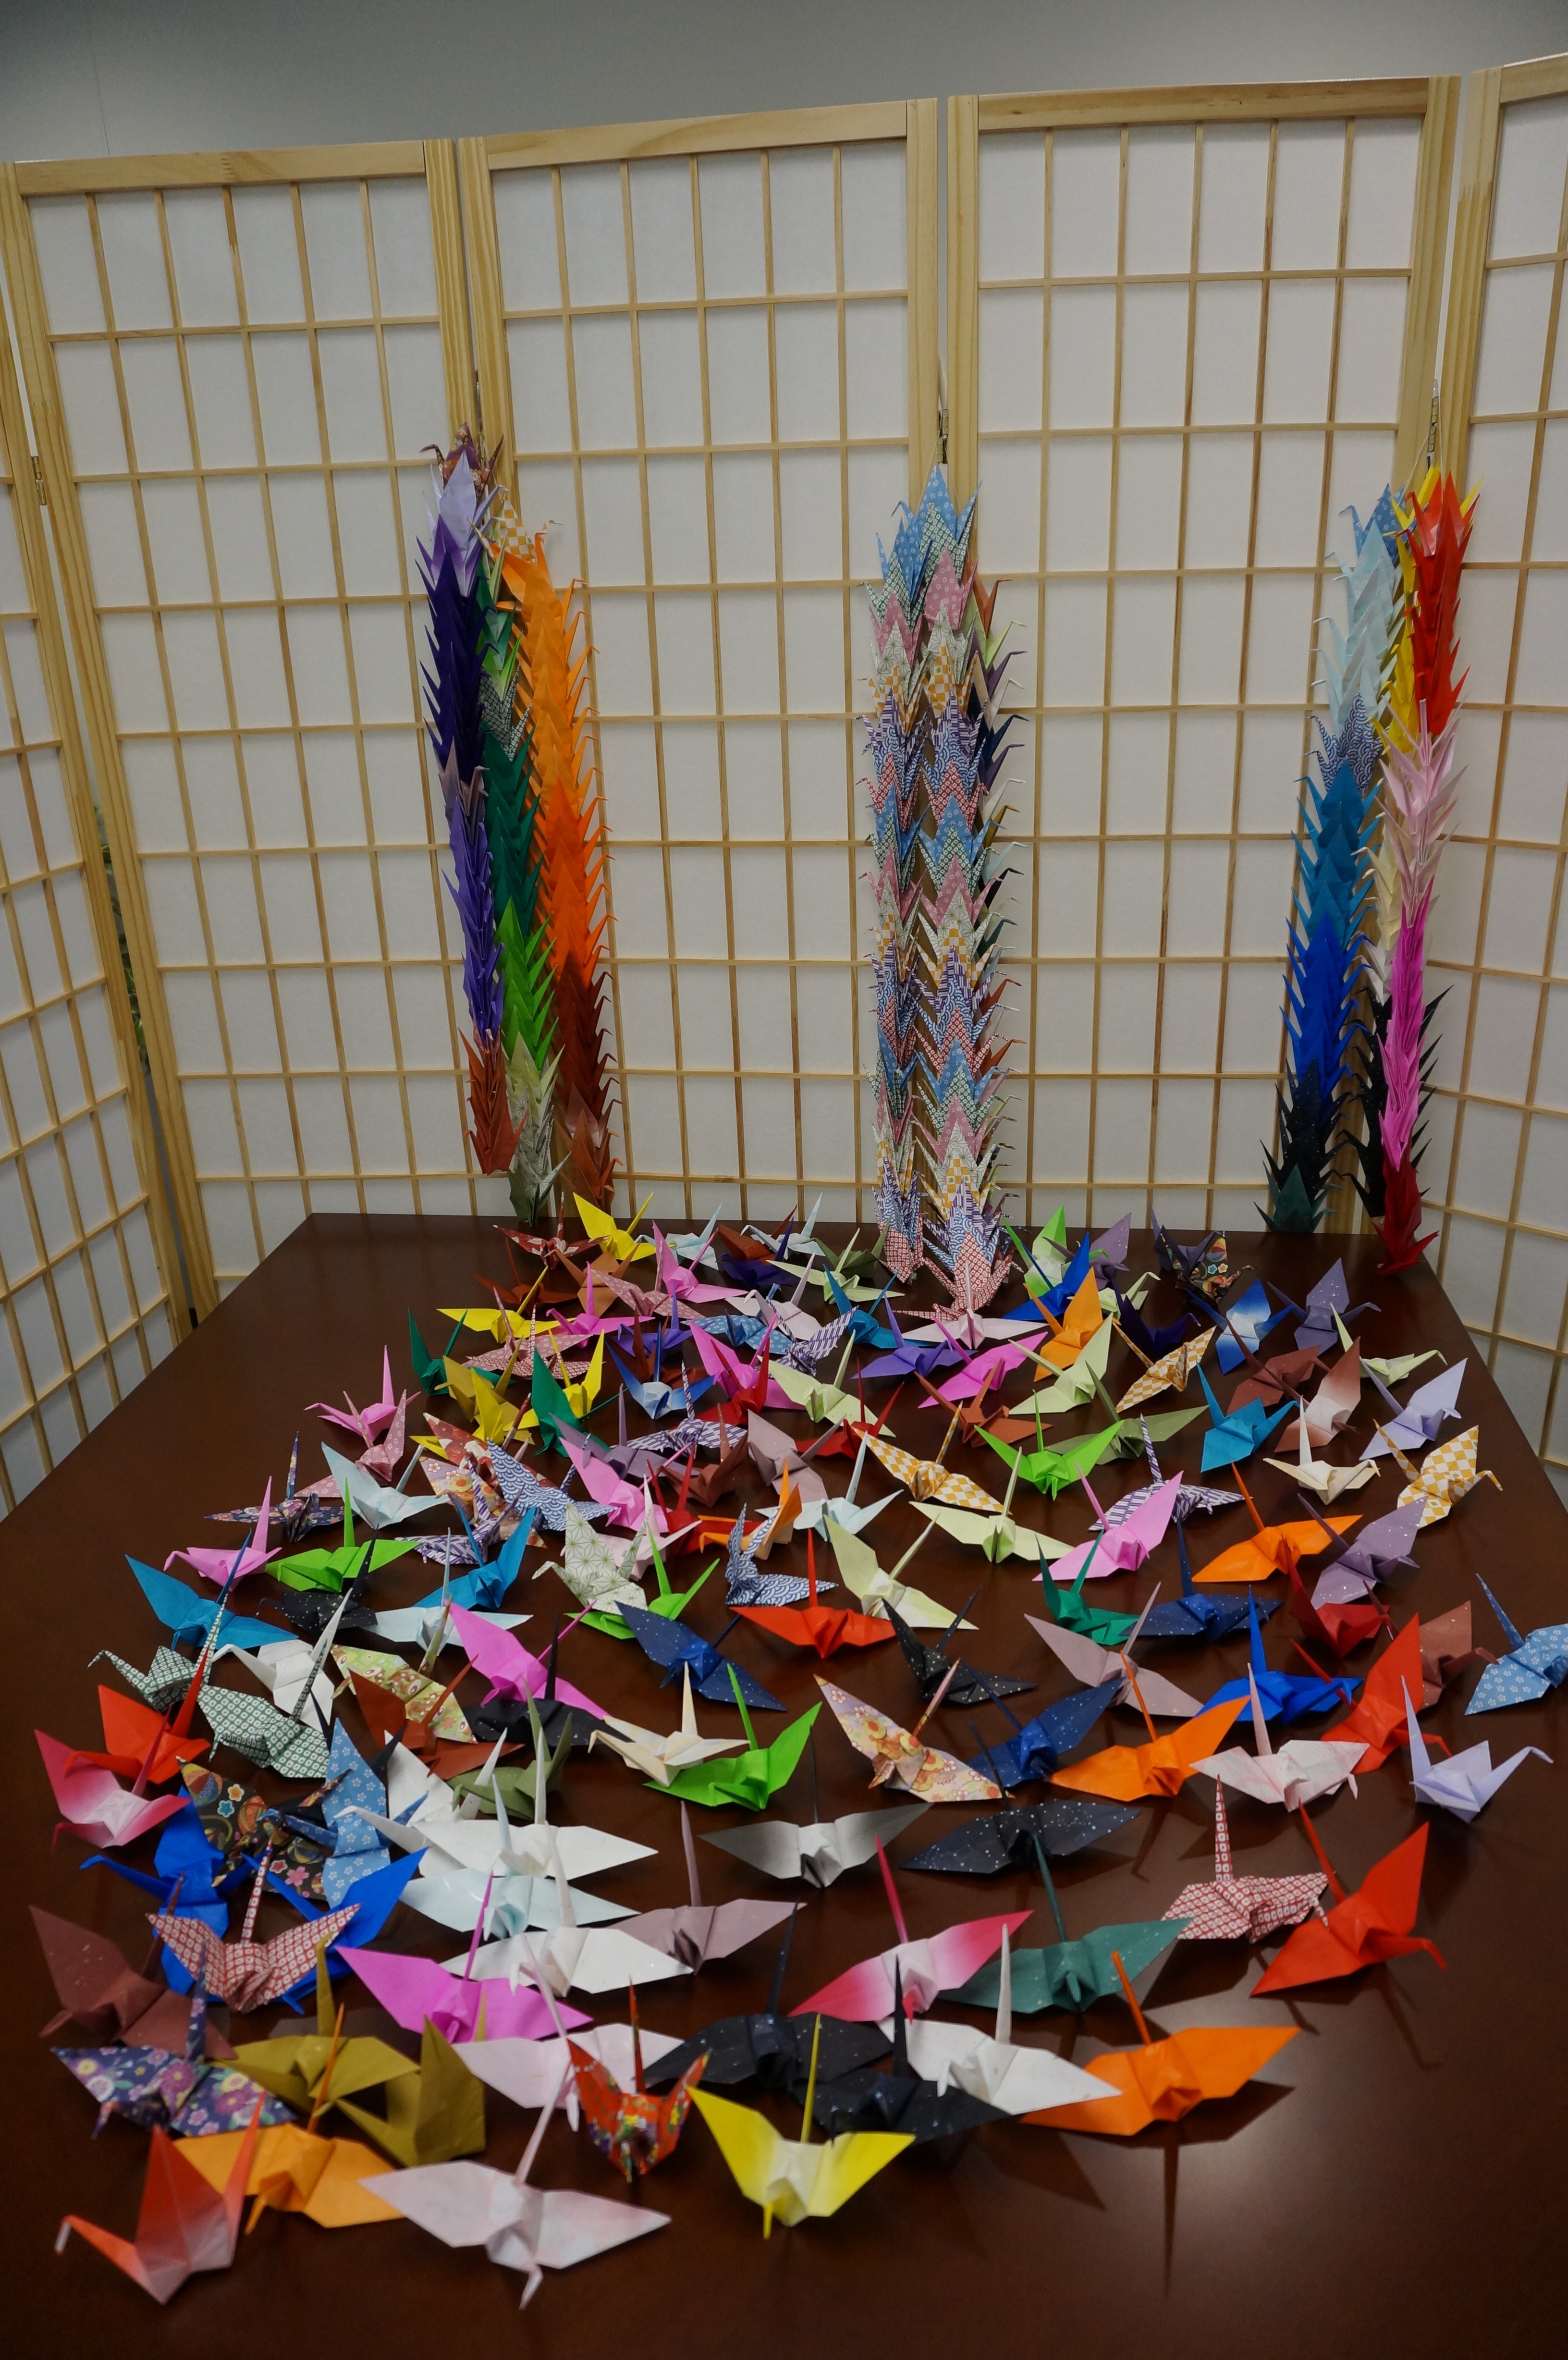 一部の折り鶴は、千羽鶴のように繋いで保管されている（「写真提供：在シアトル日本国総領事館」/ Consulate-General of Japan in Seattle）